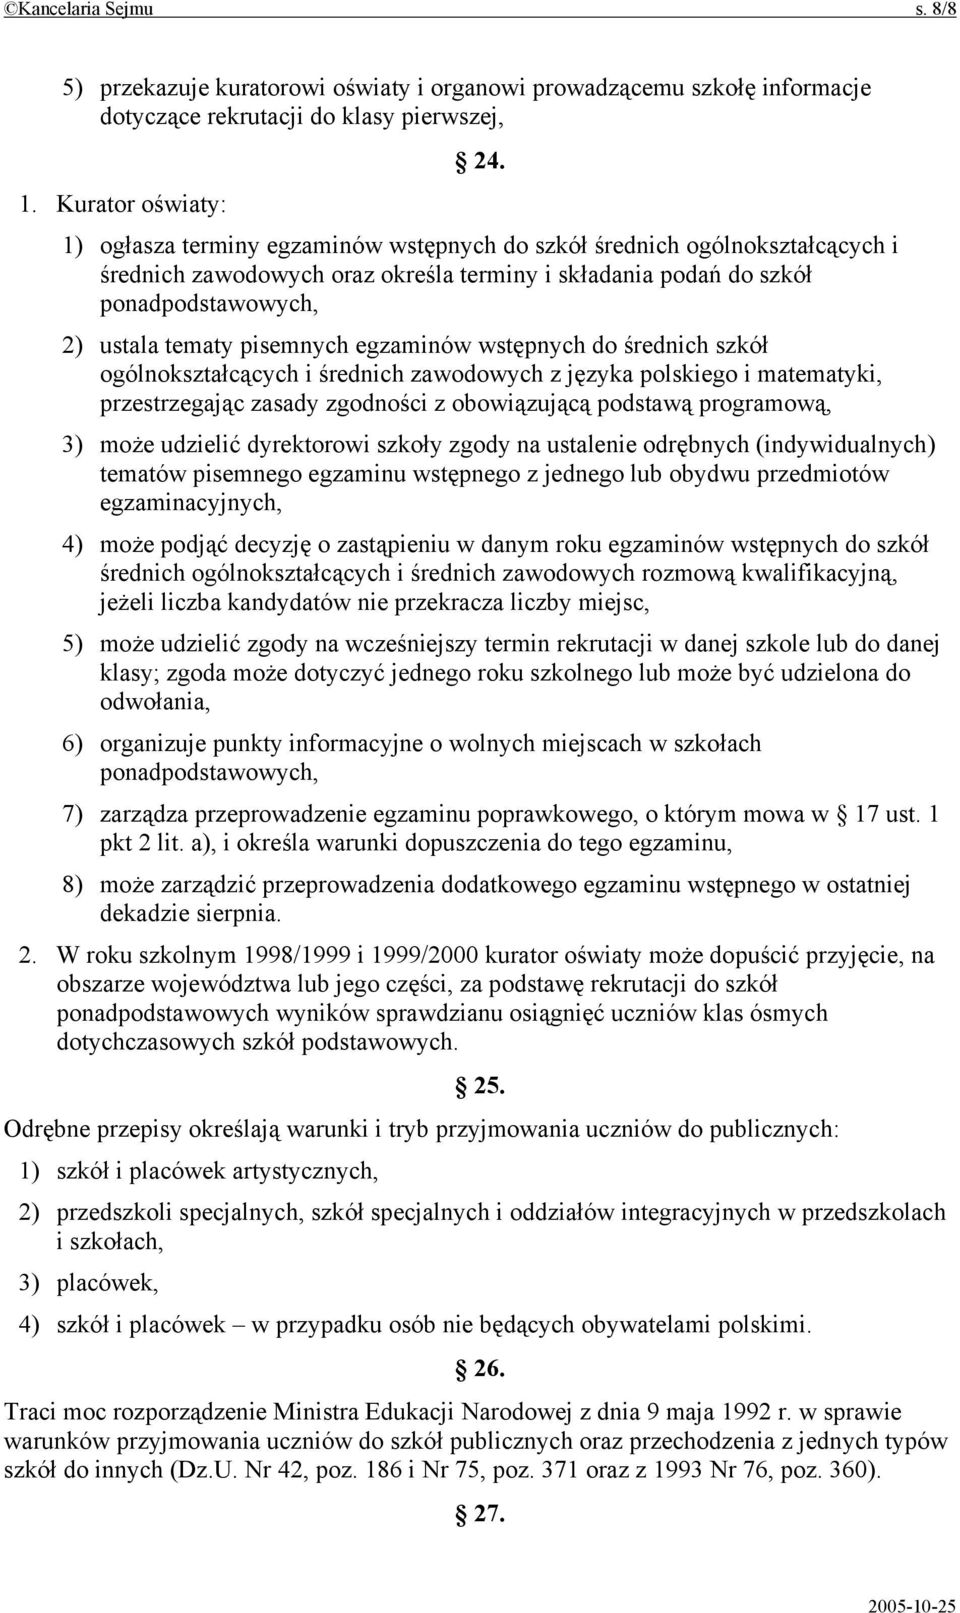 pisemnych egzaminów wstępnych do średnich szkół ogólnokształcących i średnich zawodowych z języka polskiego i matematyki, przestrzegając zasady zgodności z obowiązującą podstawą programową, 3) może